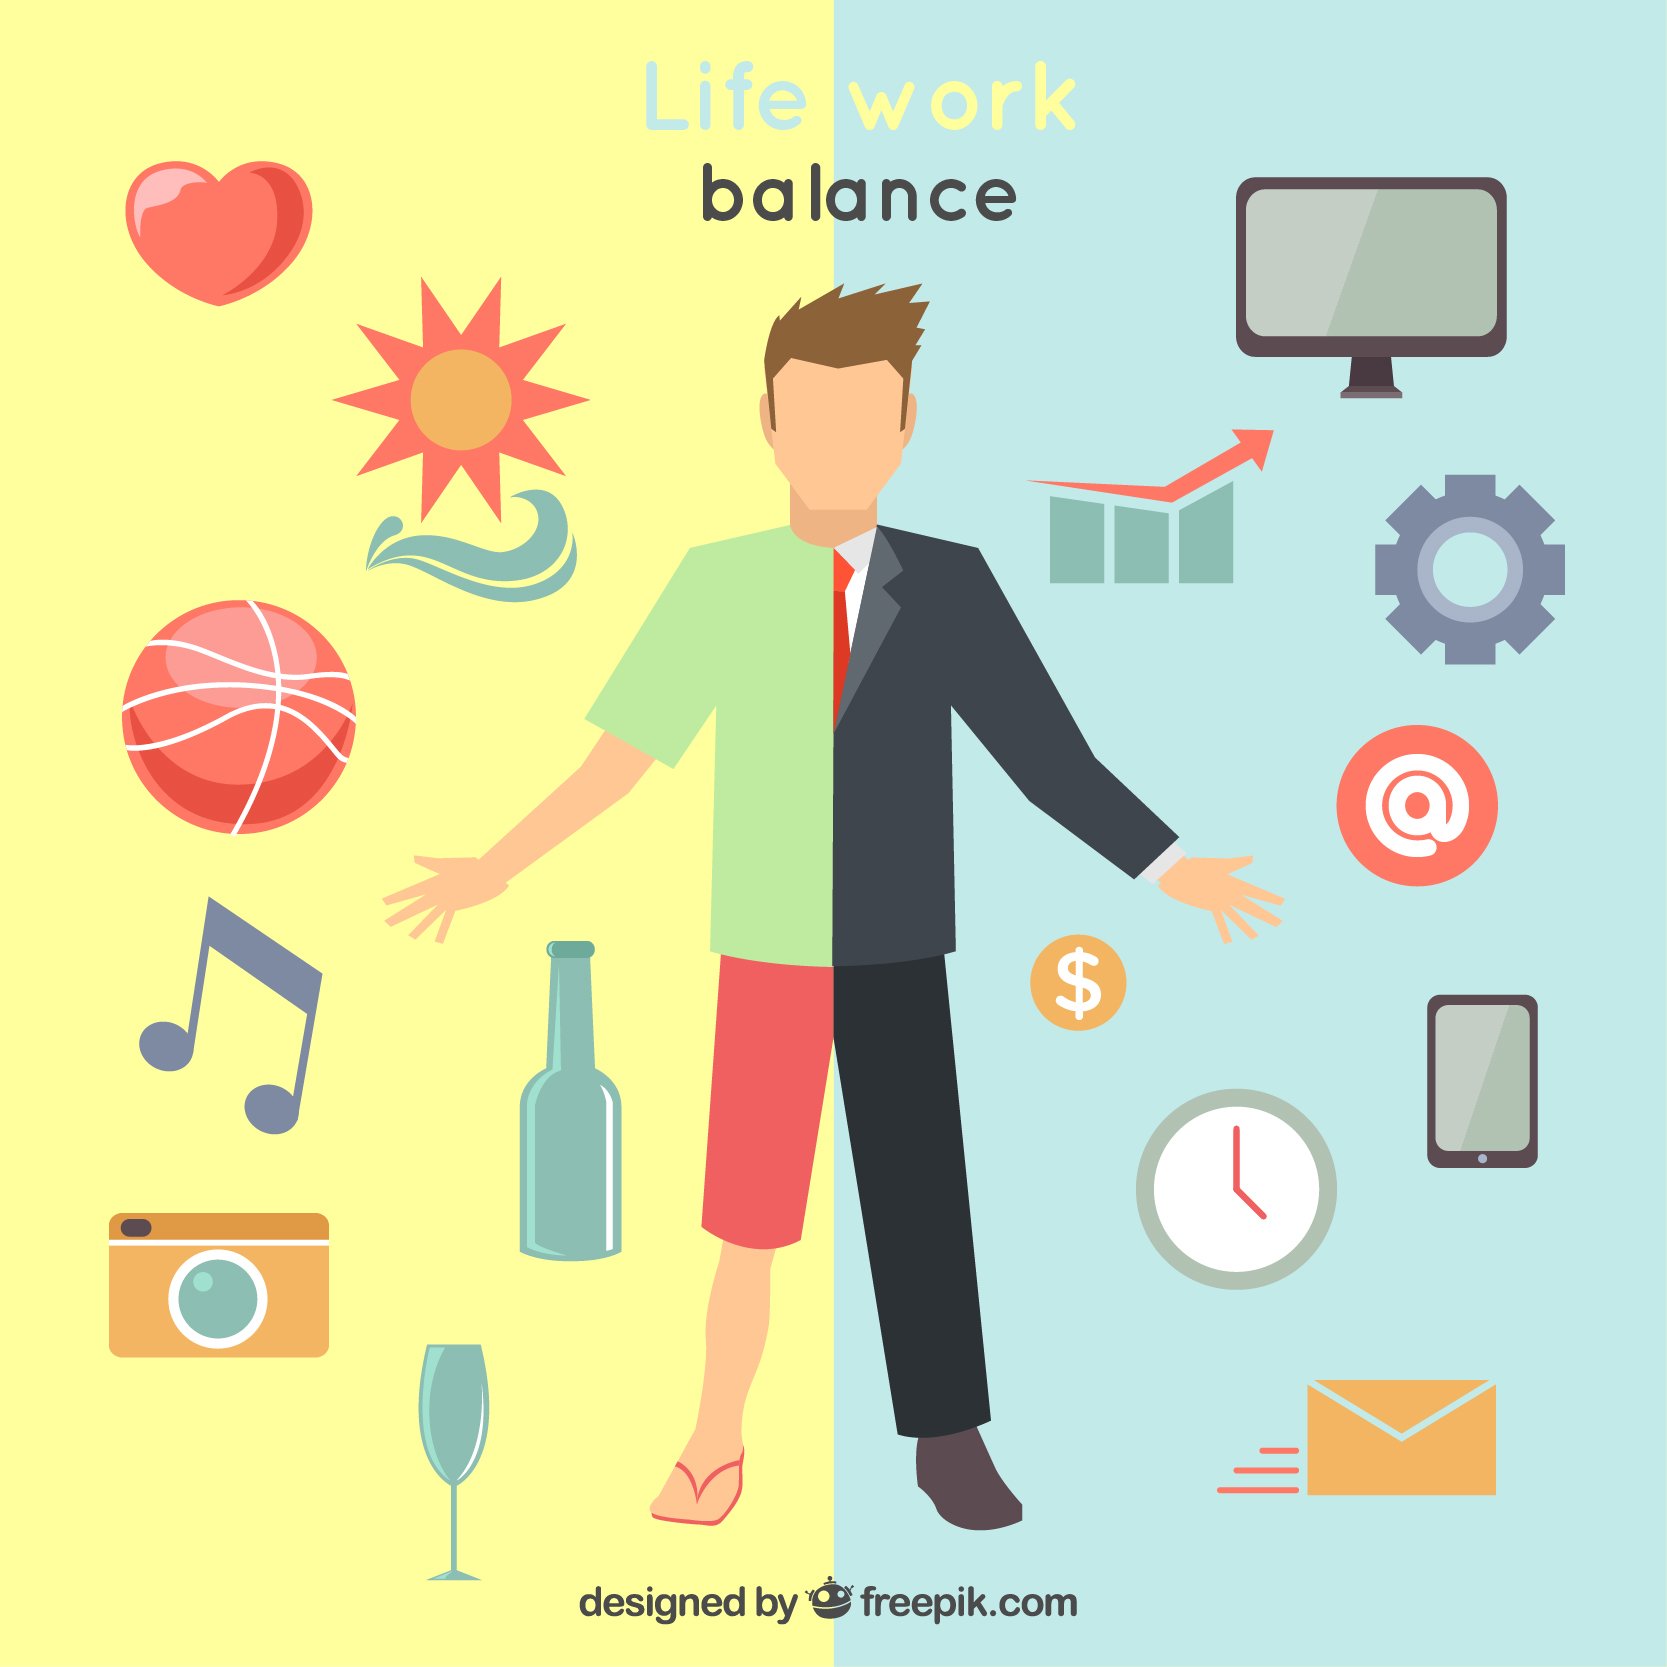 Work part of life. Work-Life Balance. Баланс между работой и жизнью. Баланс работы и личной жизни. Баланс работа жизнь.